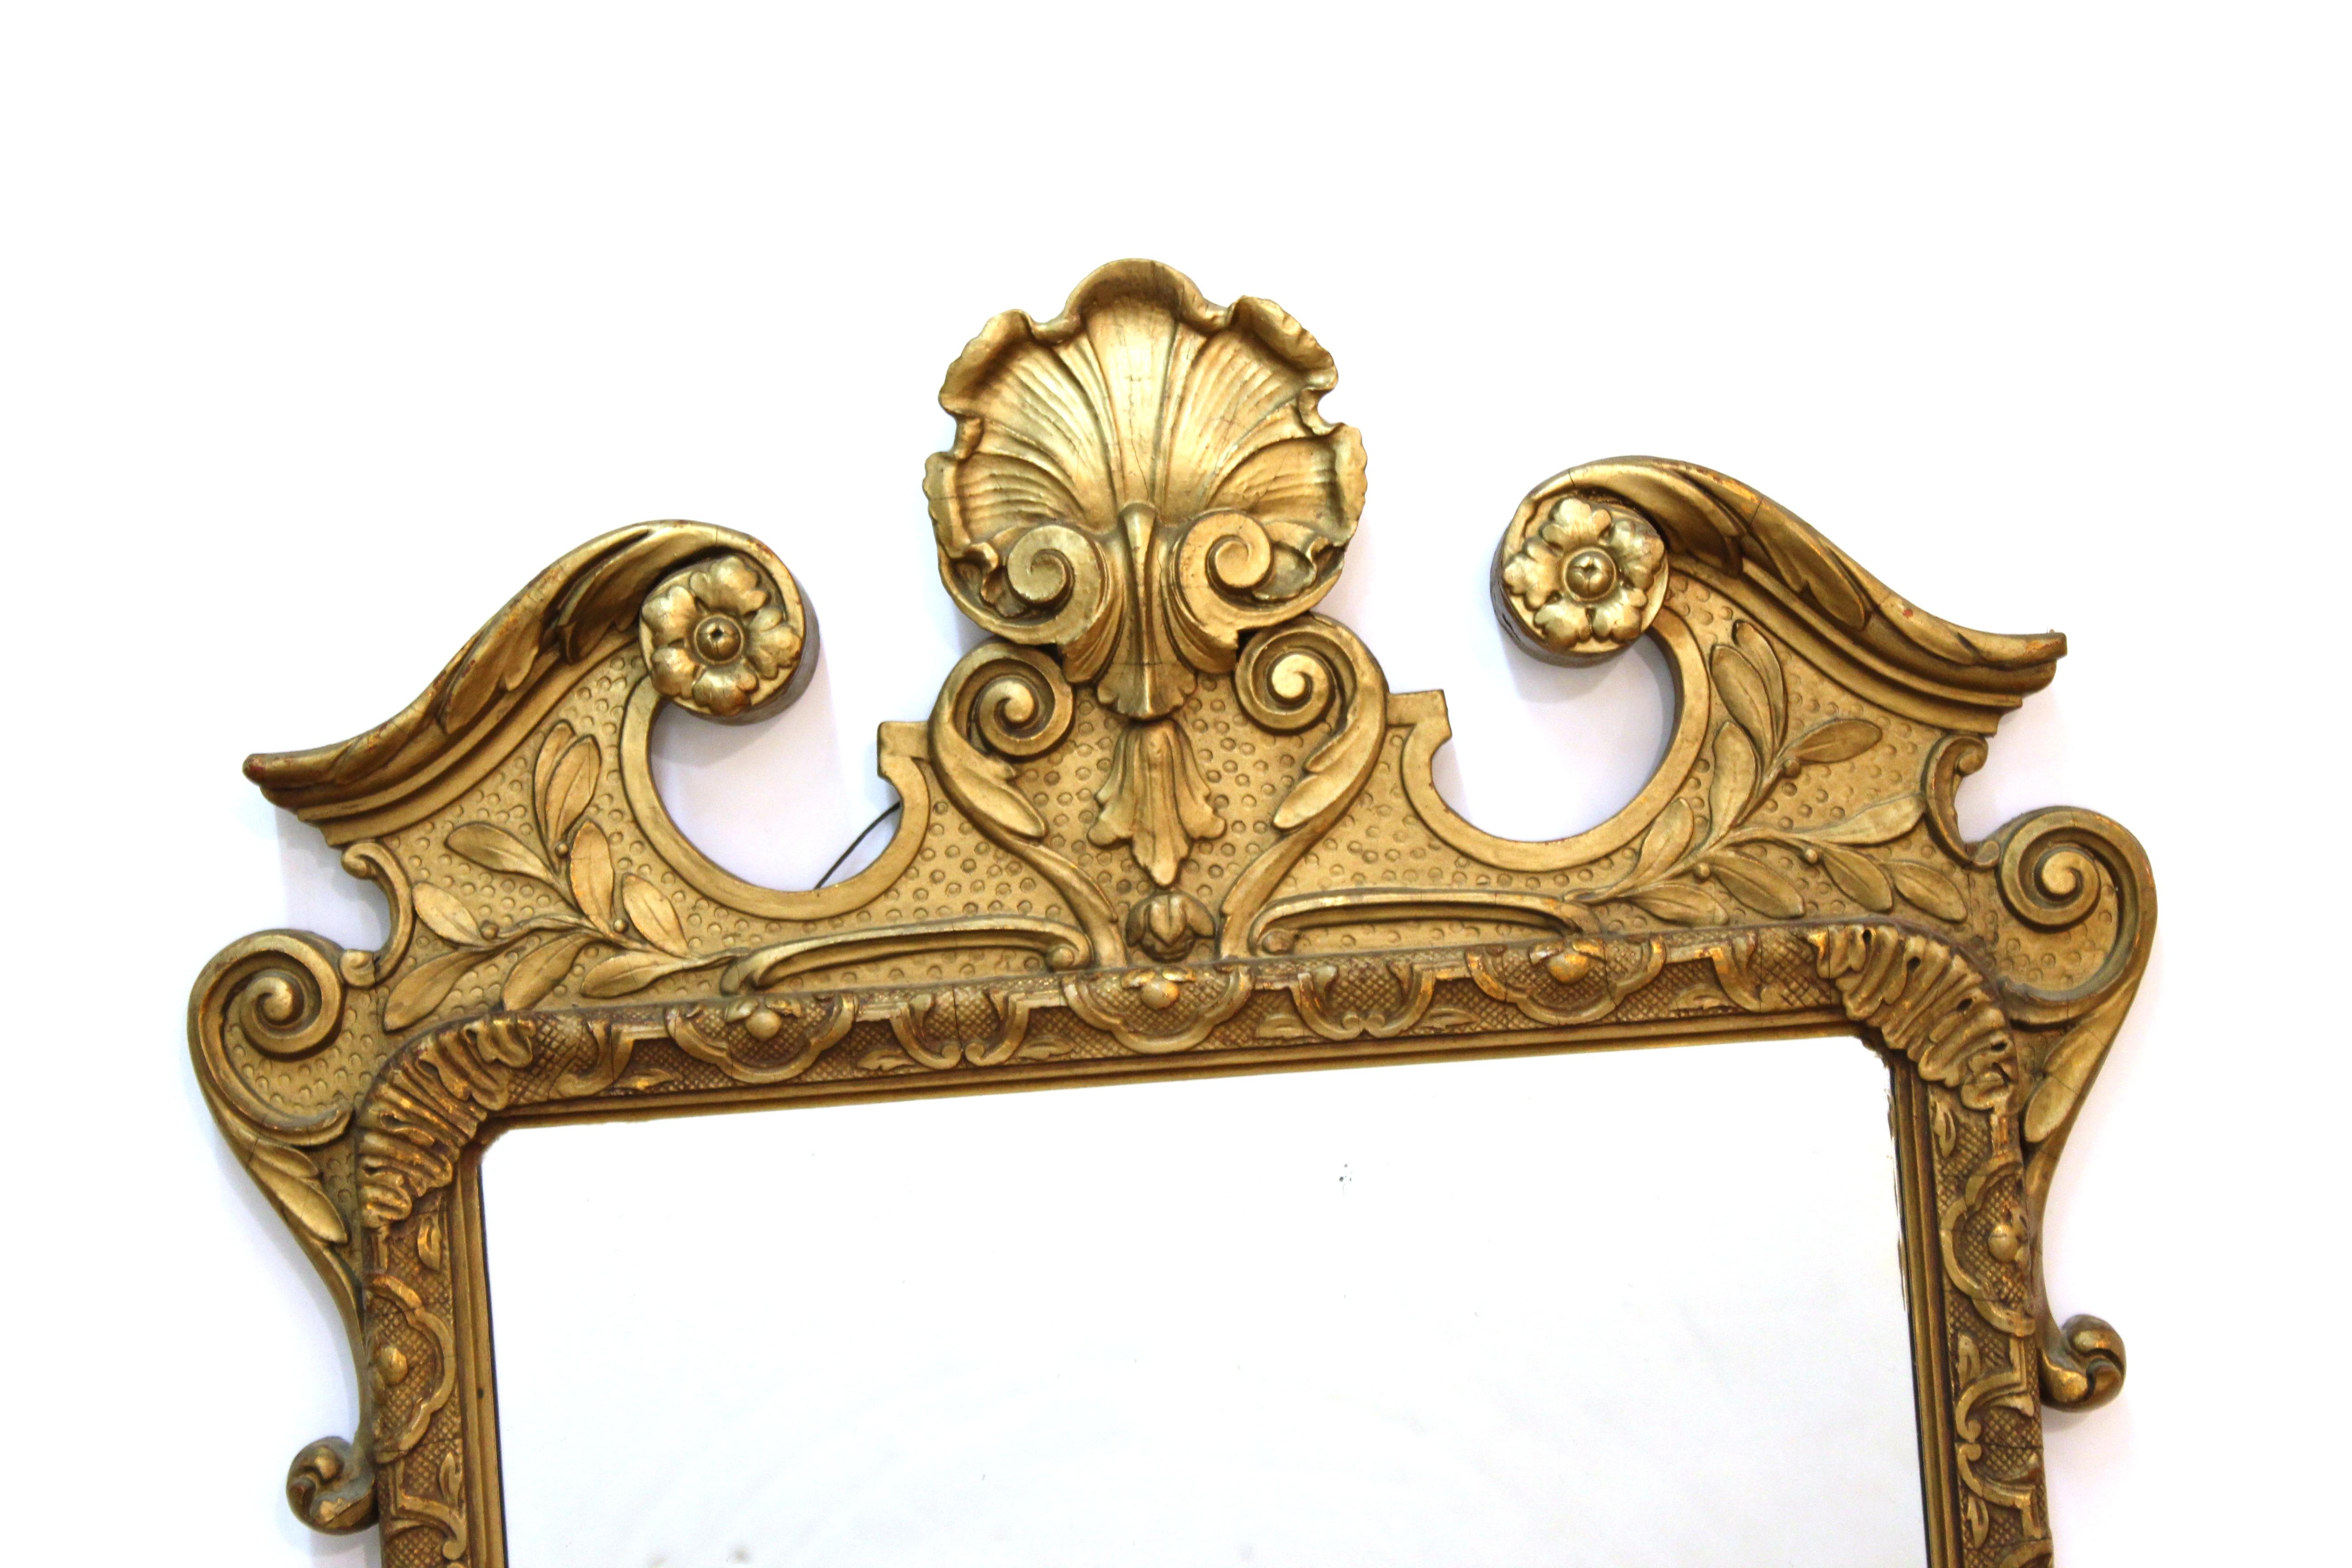 Miroir mural en bois doré sculpté de style baroque. La pièce est ornée d'une bordure décorative avec des volutes et des coquillages.

Concessionnaire : S138XX